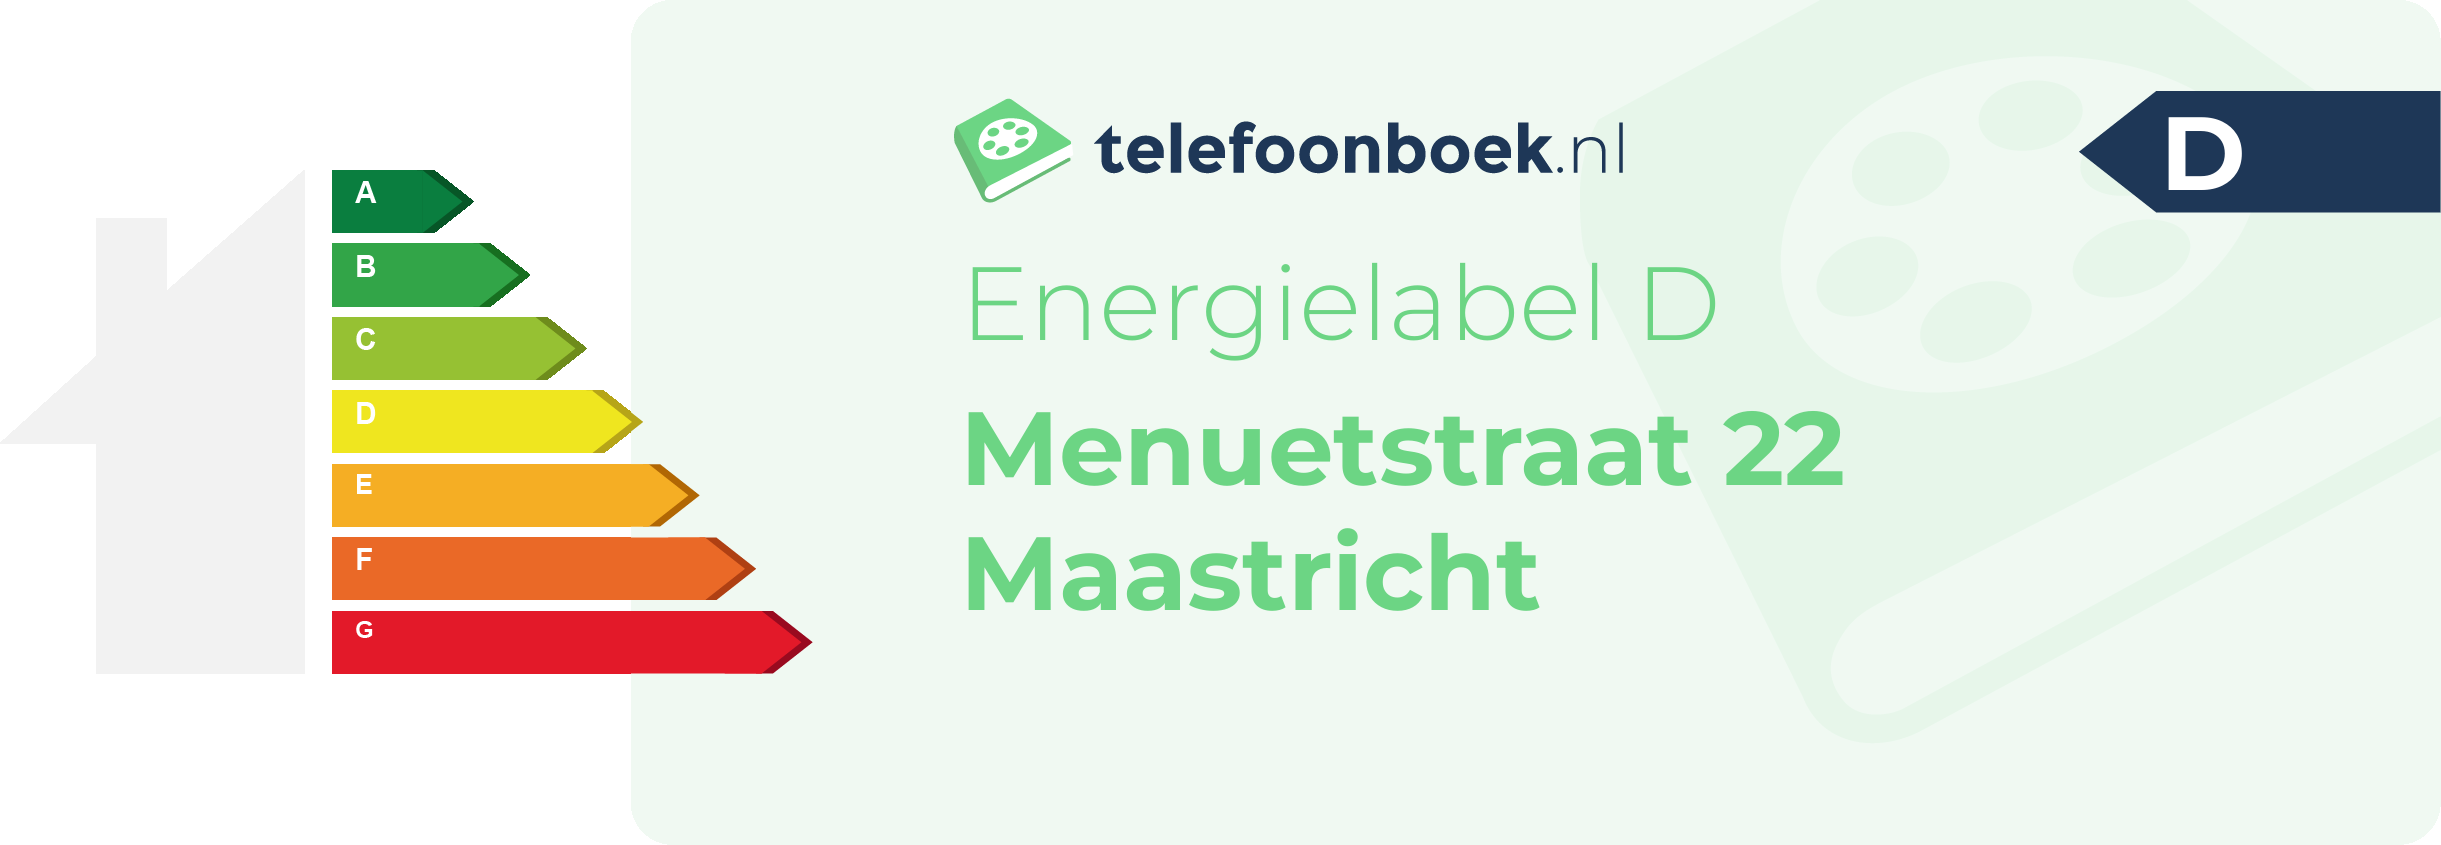 Energielabel Menuetstraat 22 Maastricht